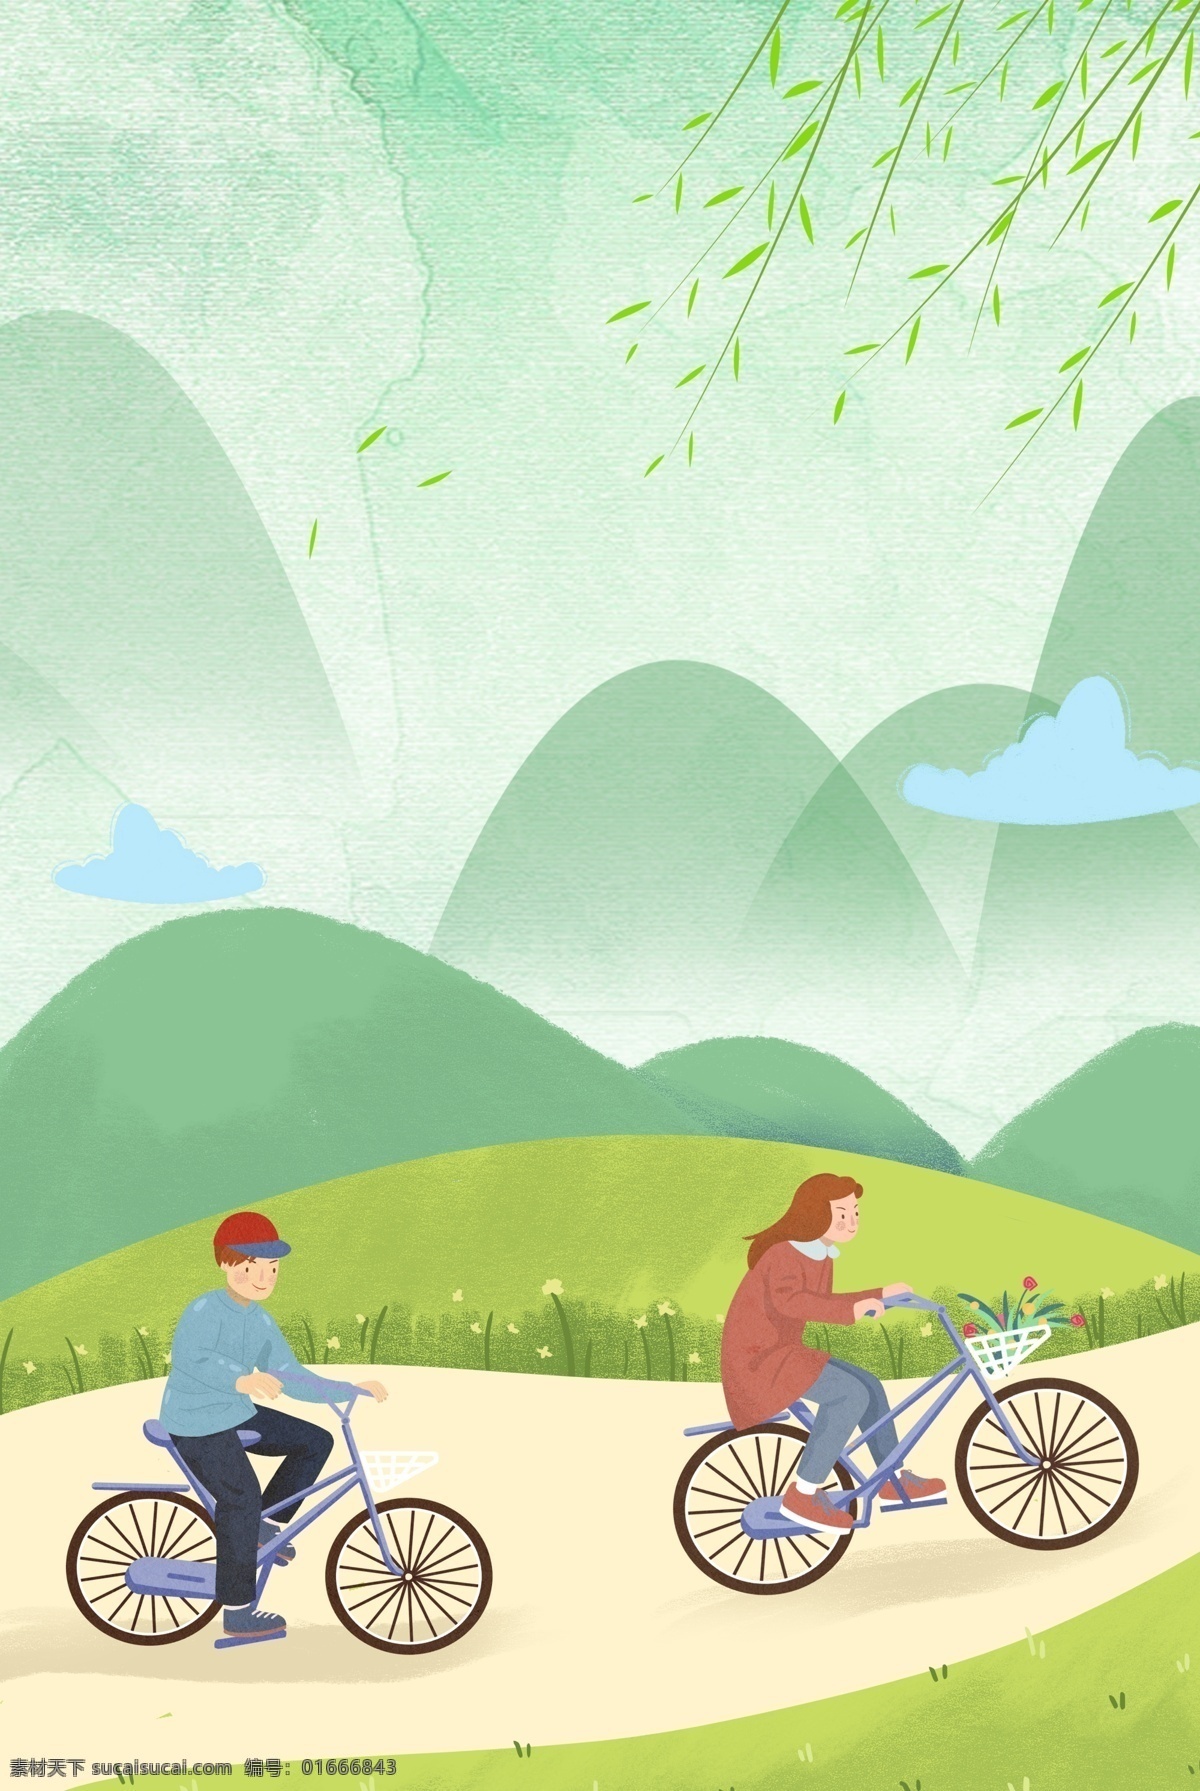 自行车 旅游 文艺 卡通 手绘 背景 骑自行车 郊游 郊外游